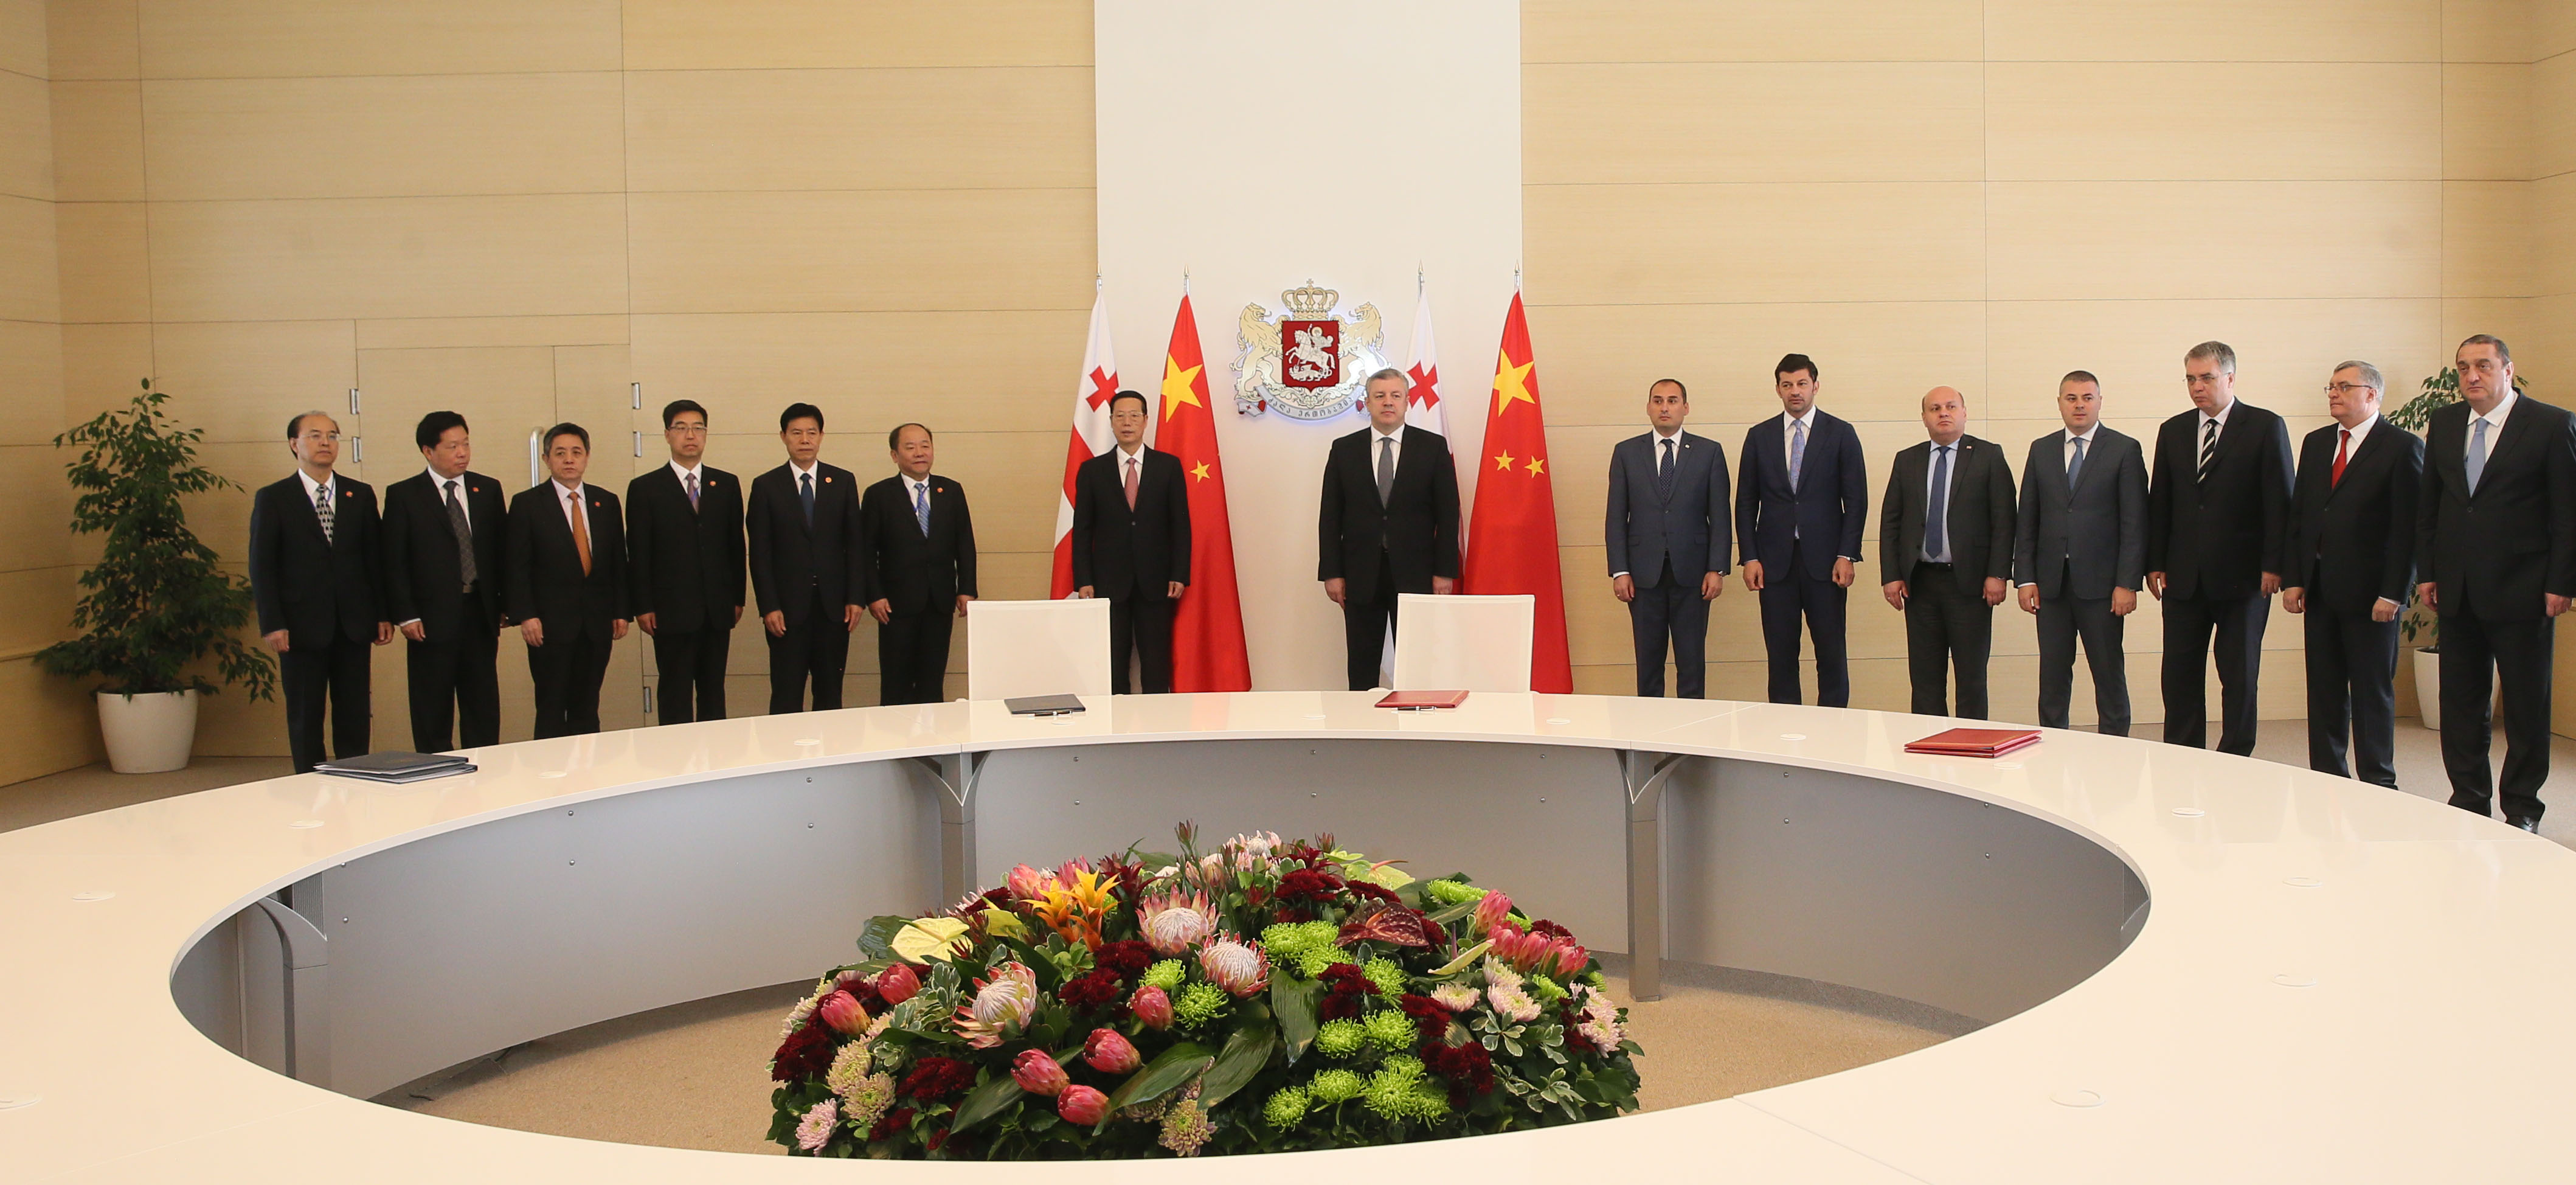 A memorandum signed between China and Georgian Republic